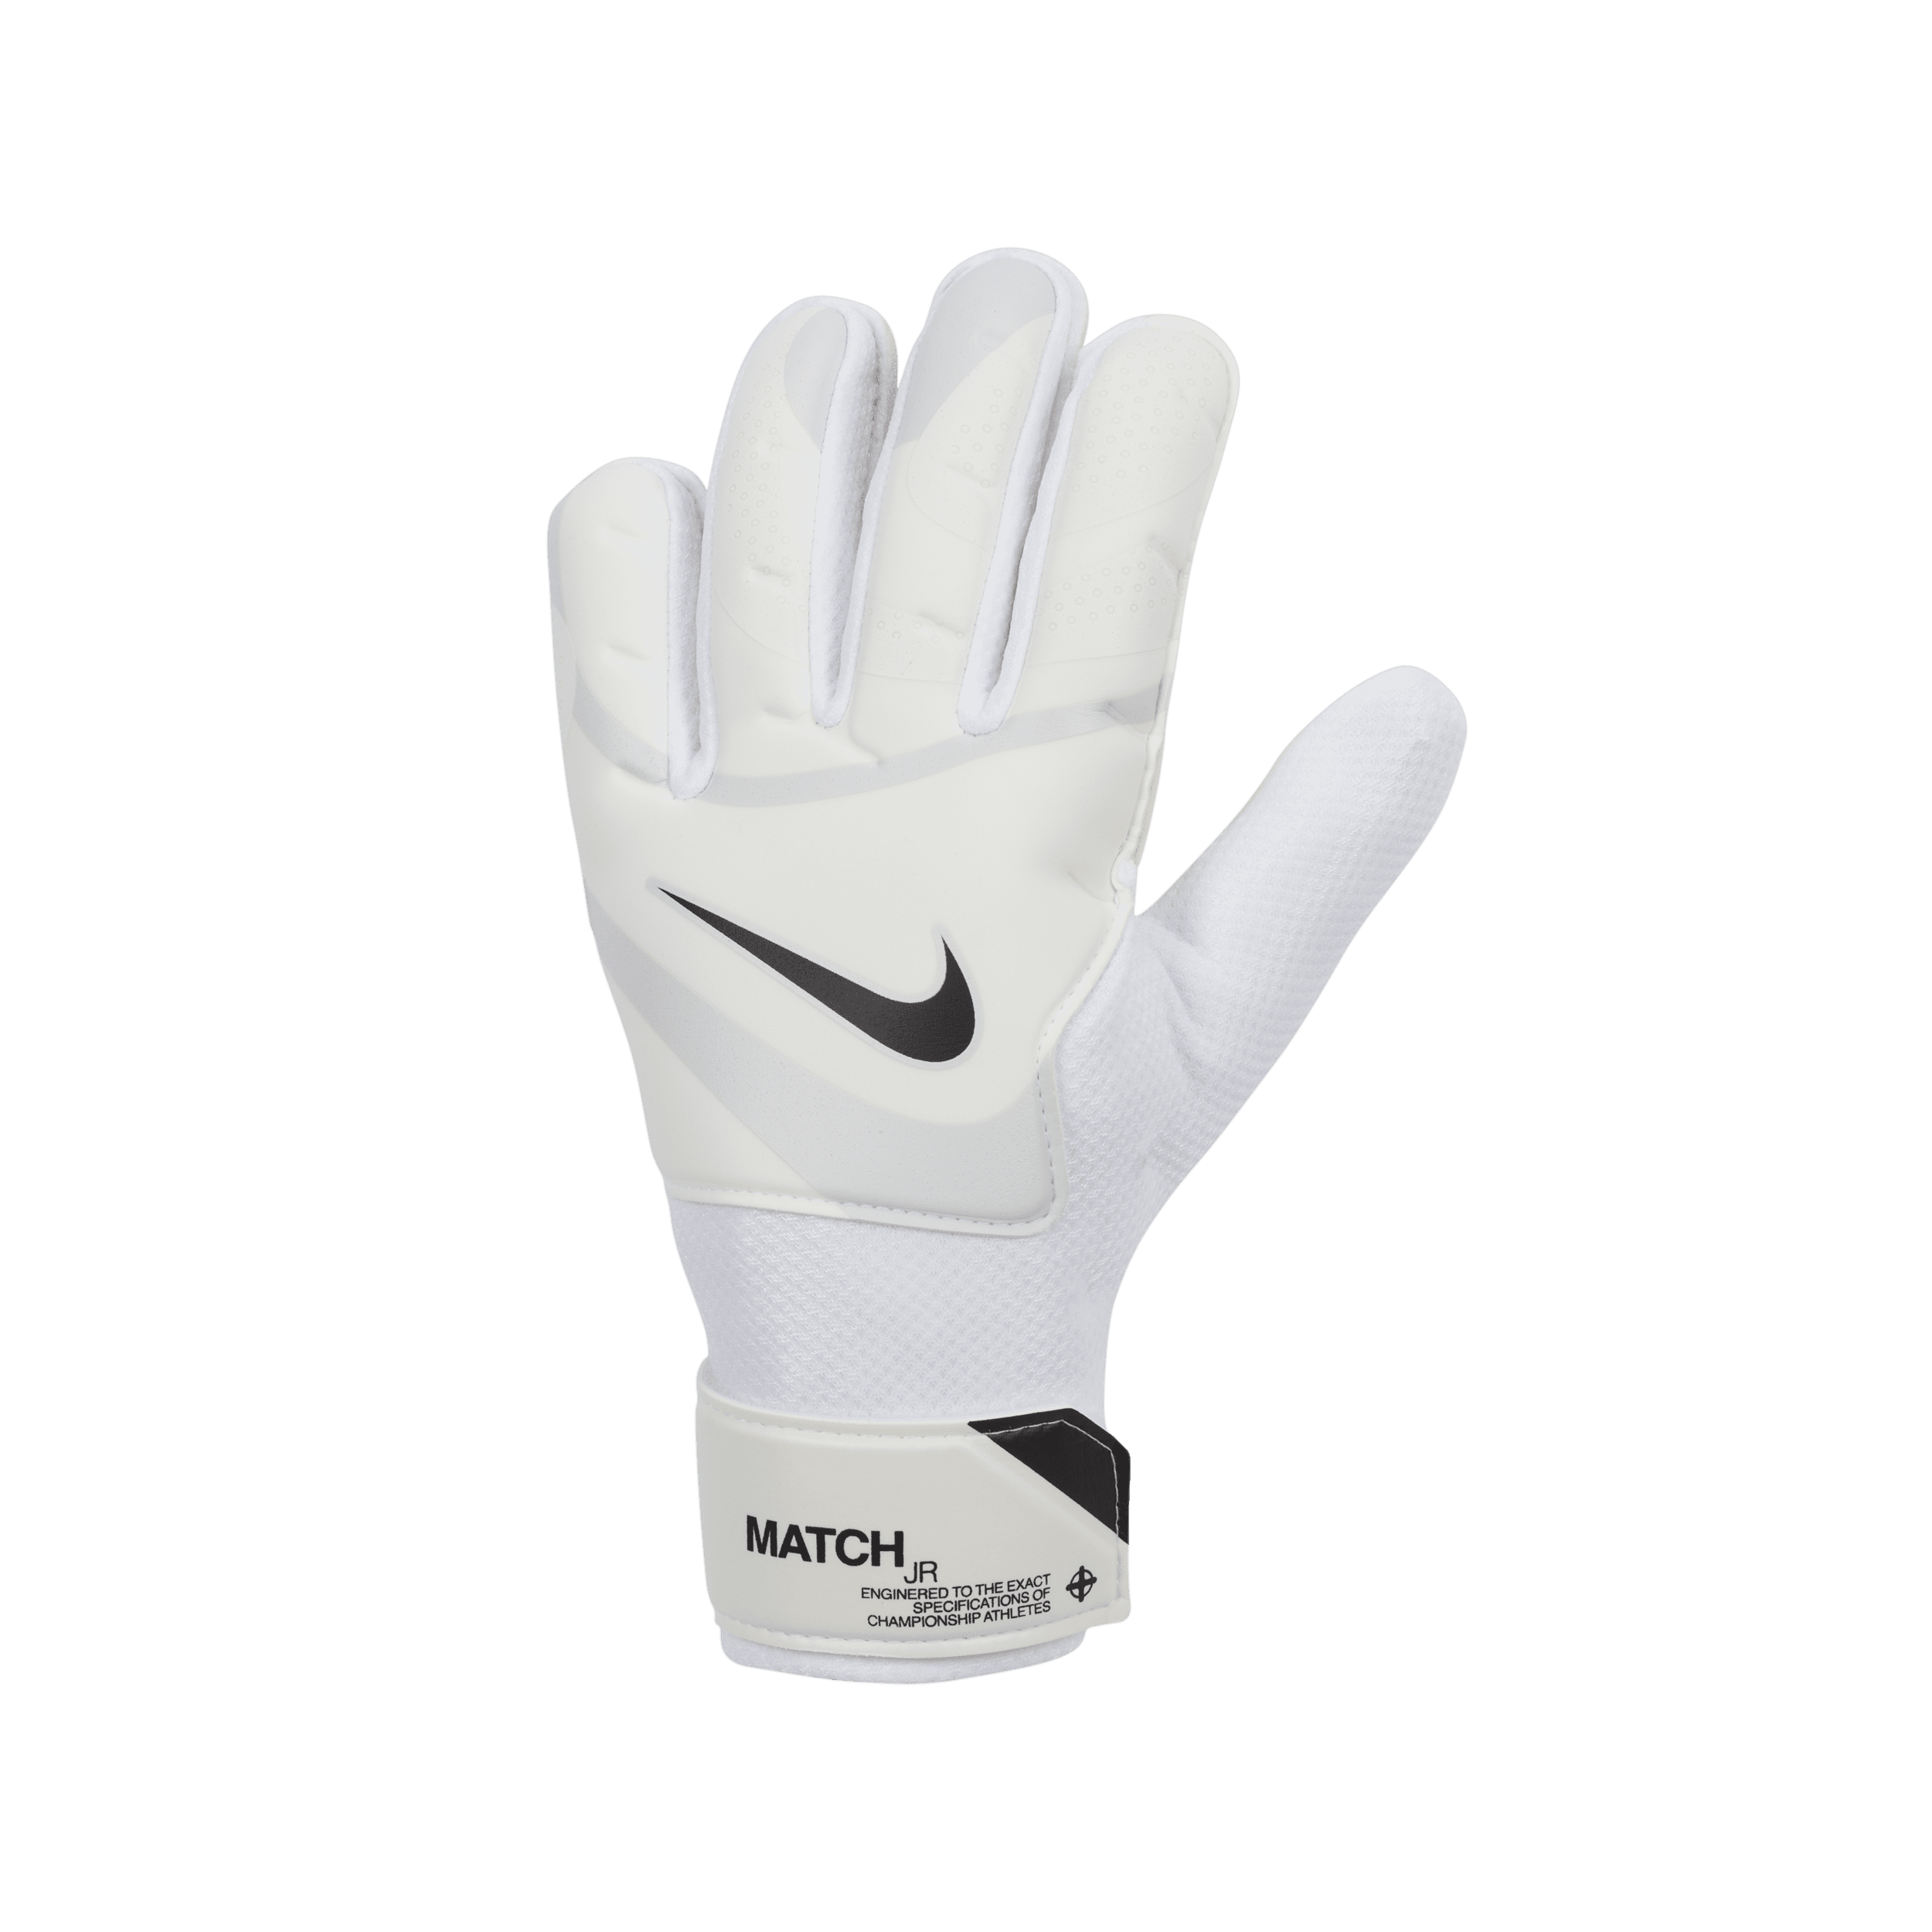 Nike Match Jr.-målmandshandsker - hvid